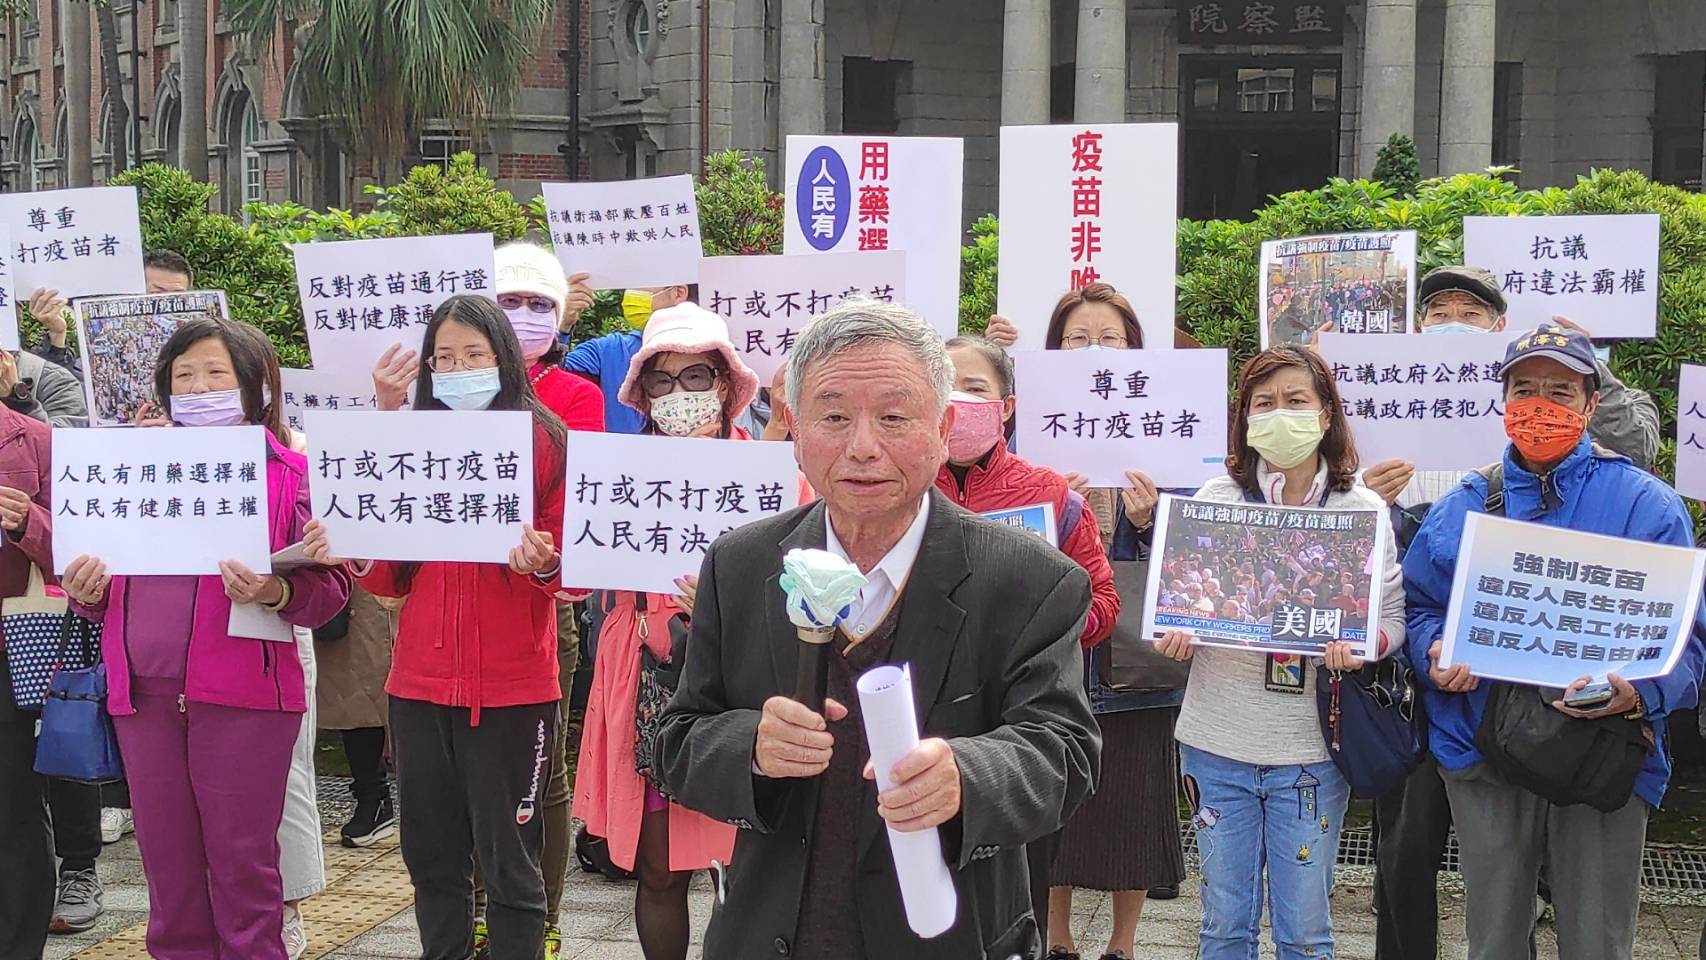 【有影】楊志良鍾琴帶隊抗議 指控陳時中強制民眾打疫苗、快篩違憲